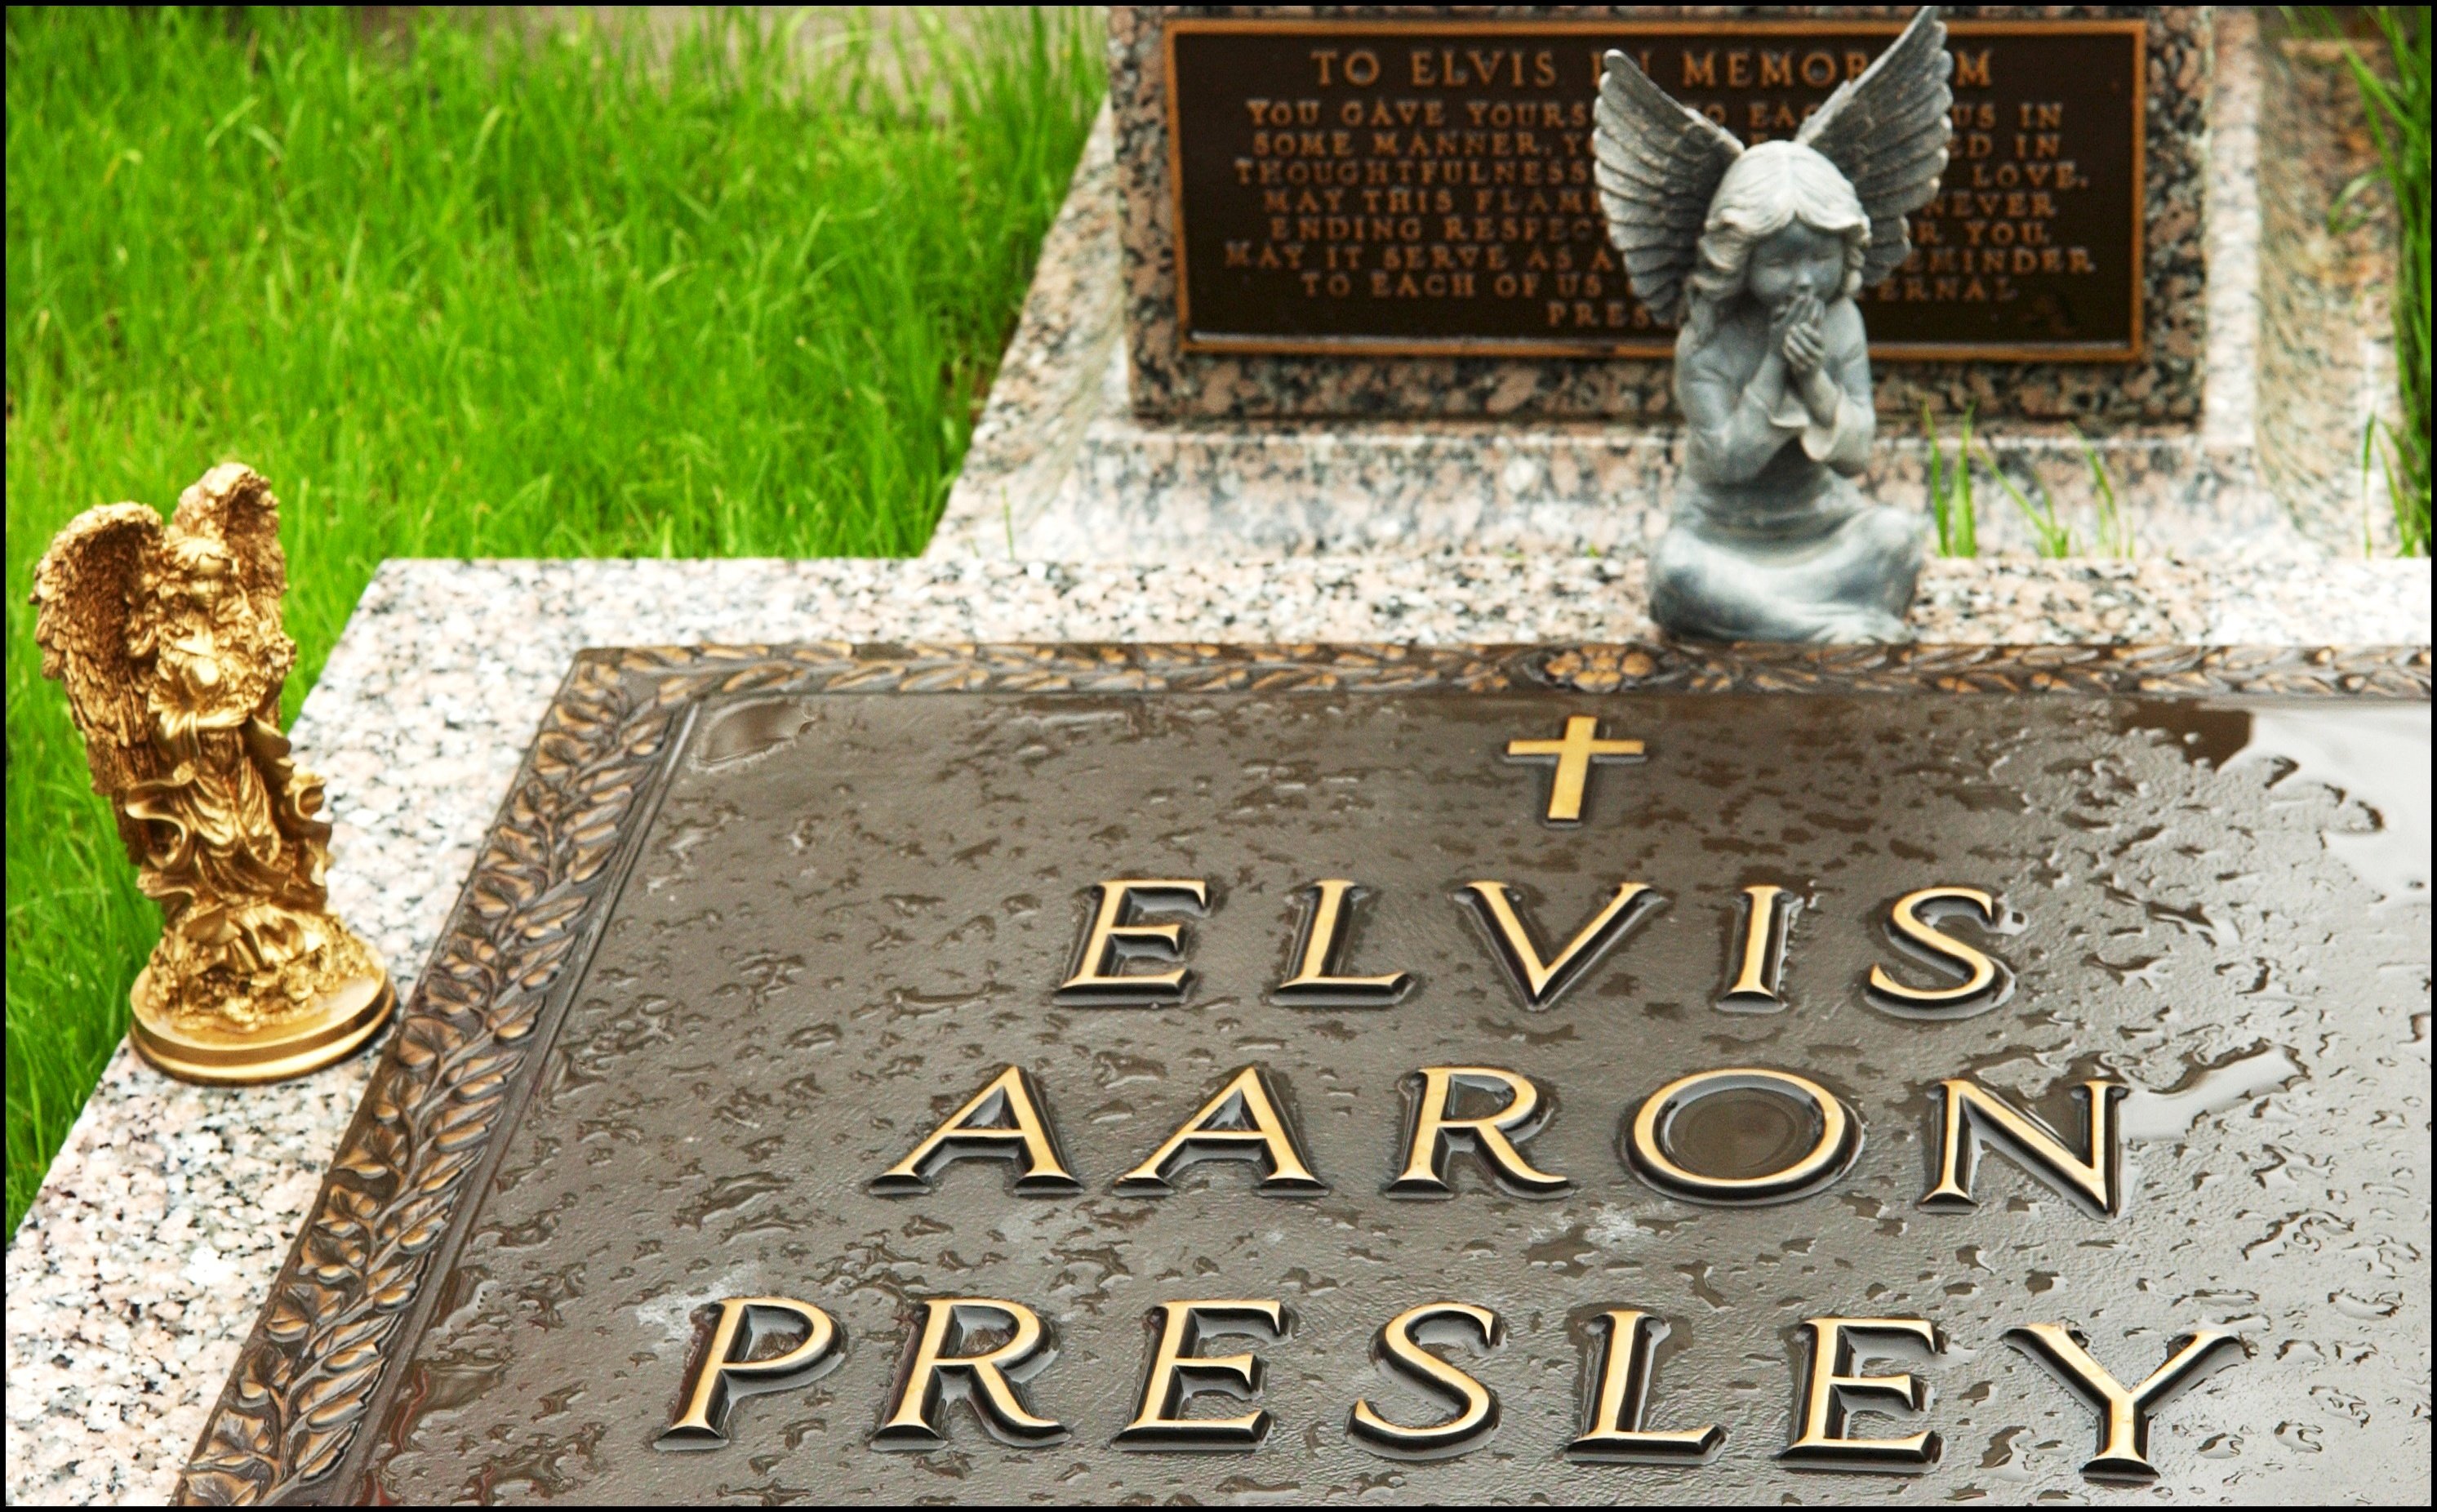 Angel figurines at Elvis Presley's grave